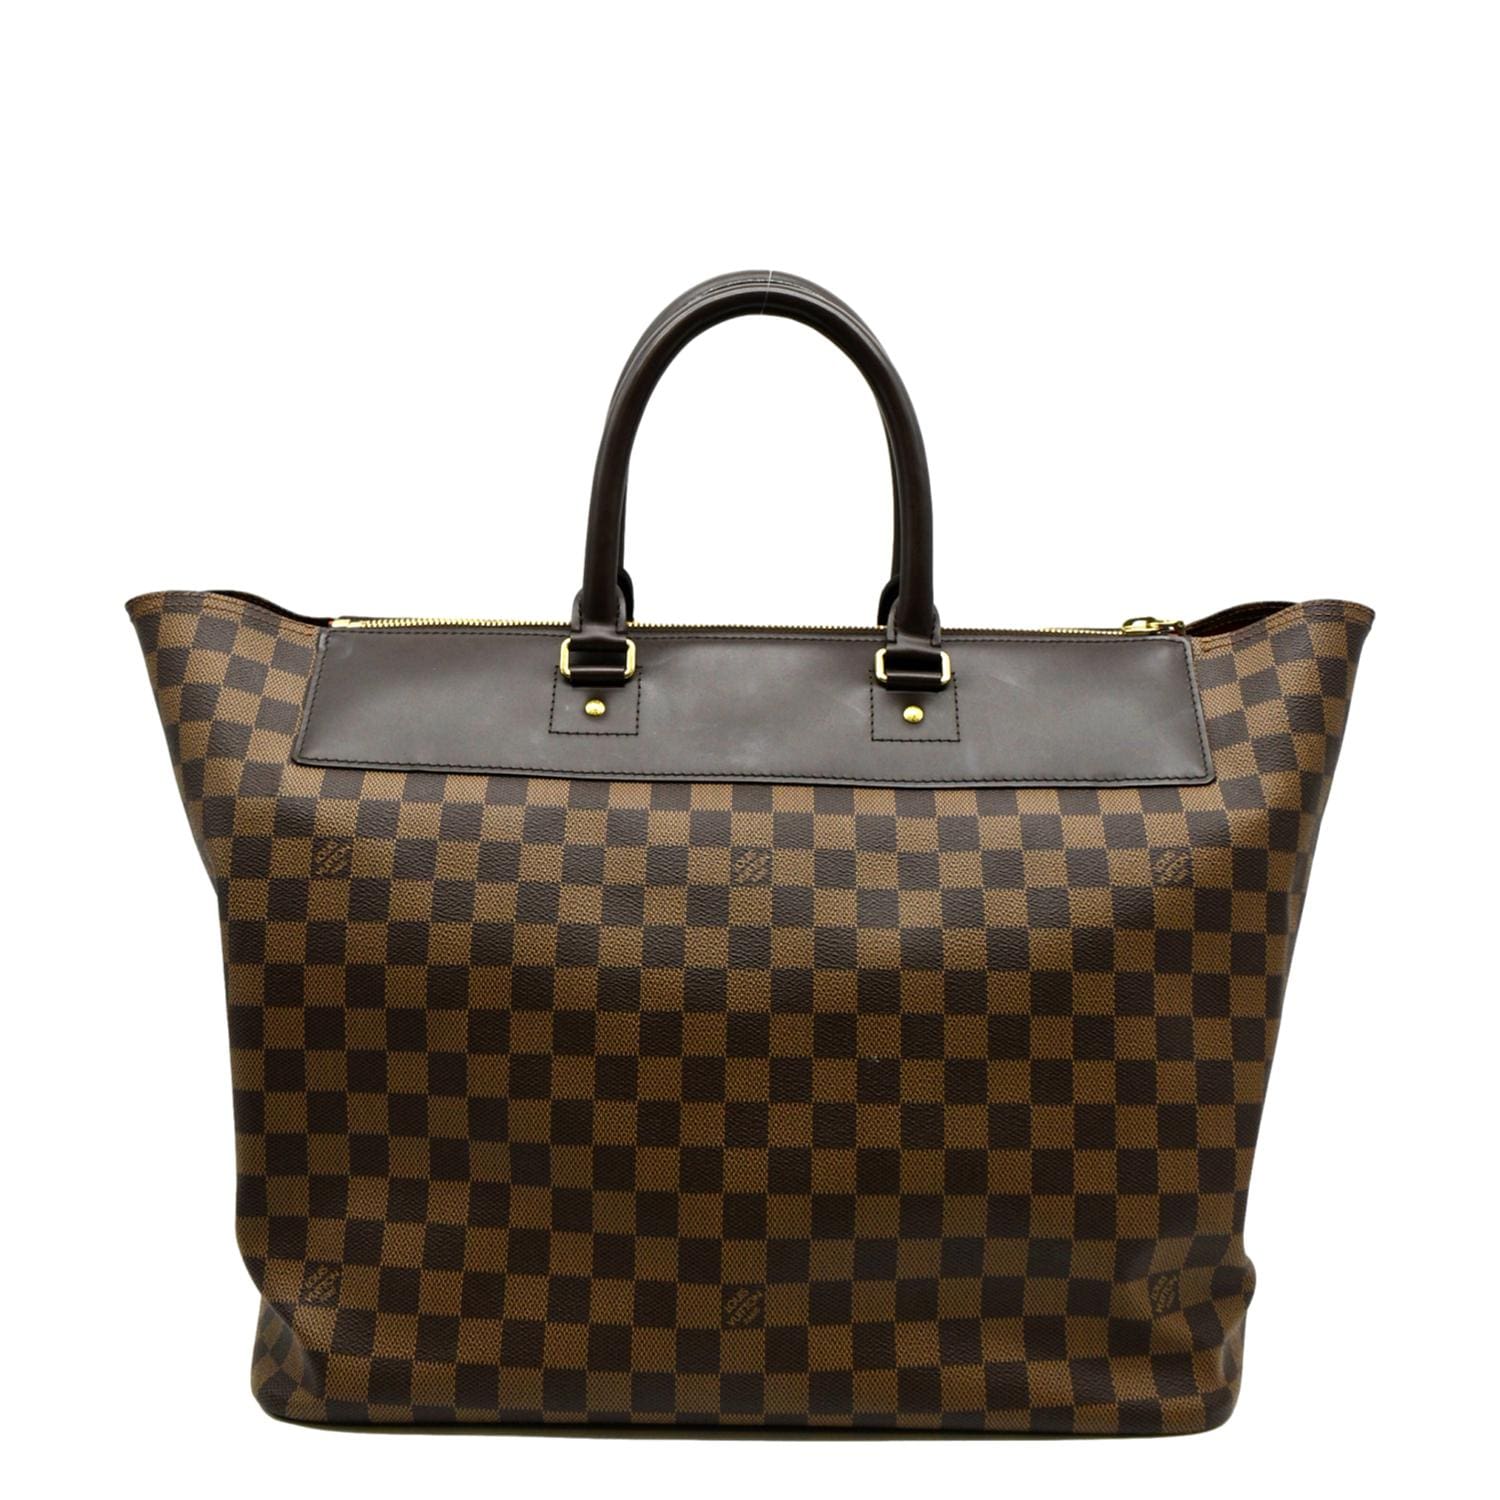 Woman bag,LV ladies Tote Bag / travel bag